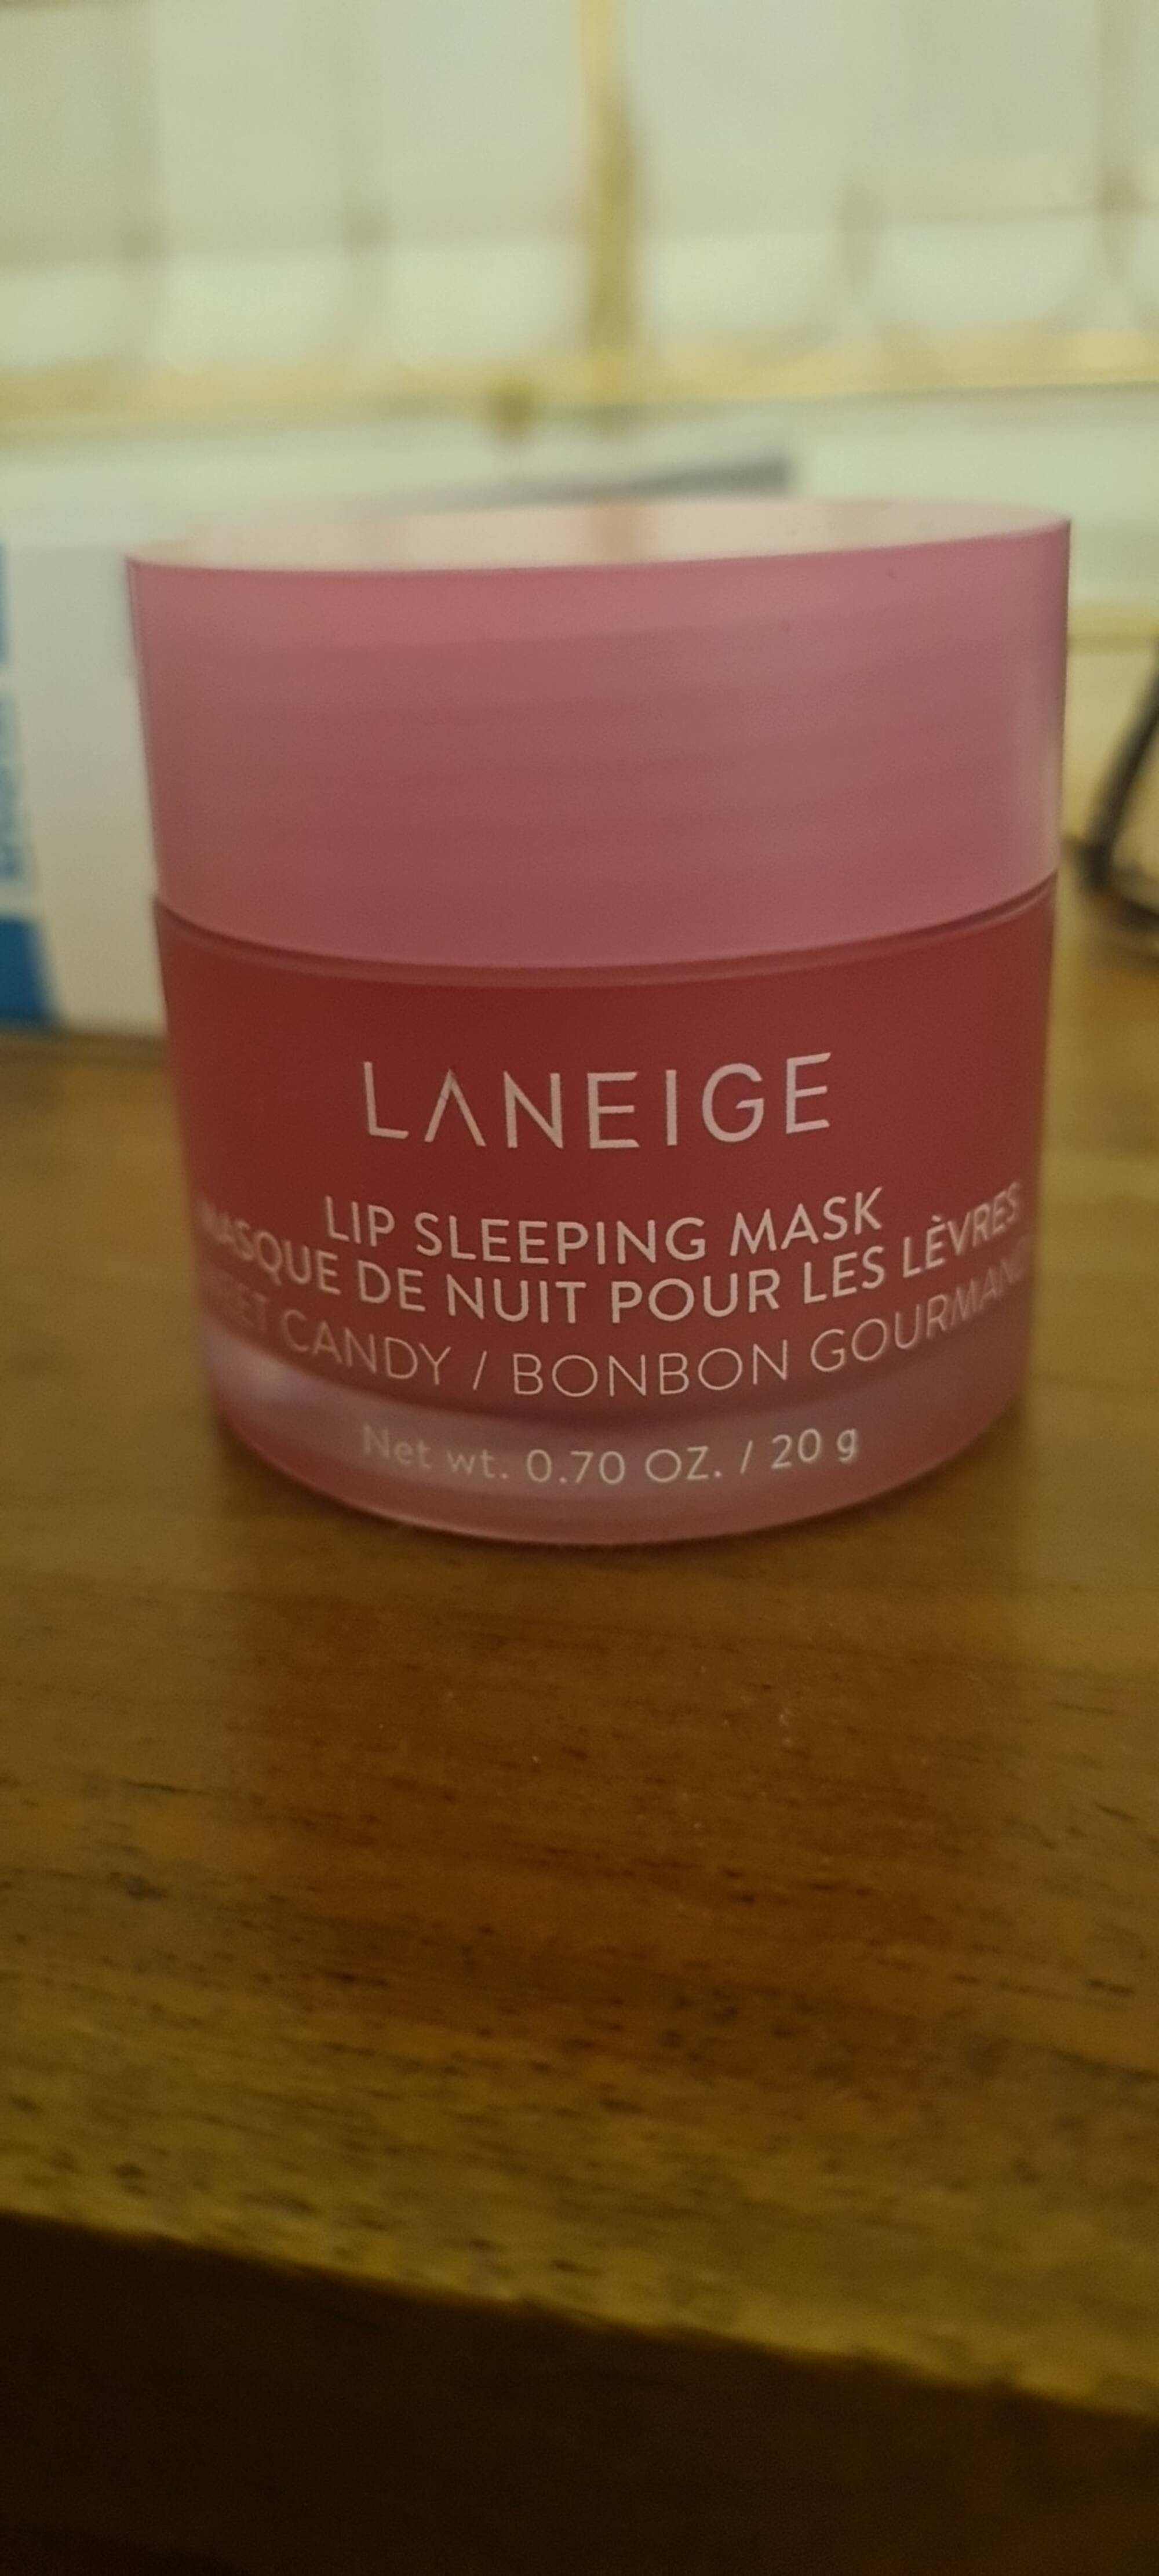 LANEIGE - Bonbon gourmand - Masque de nuit pour les lèvres